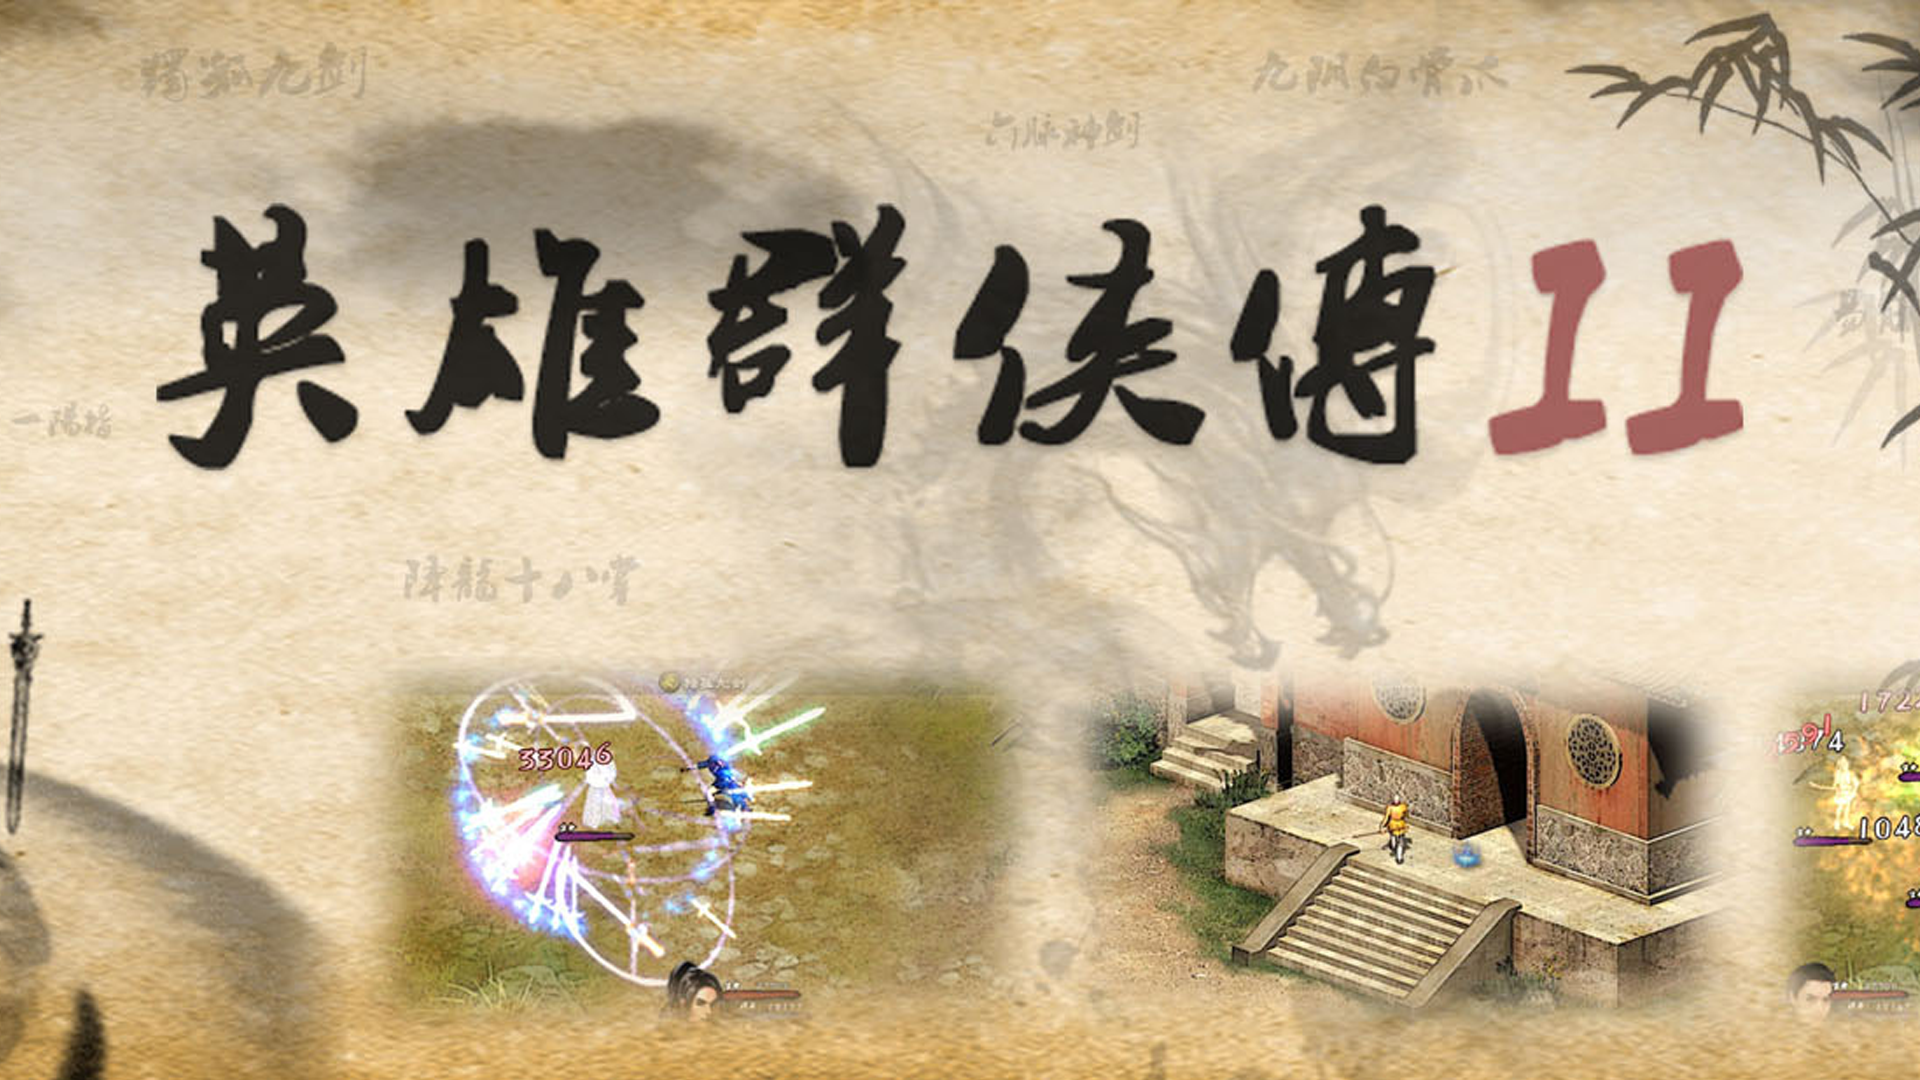 Banner of 英雄群俠傳II 